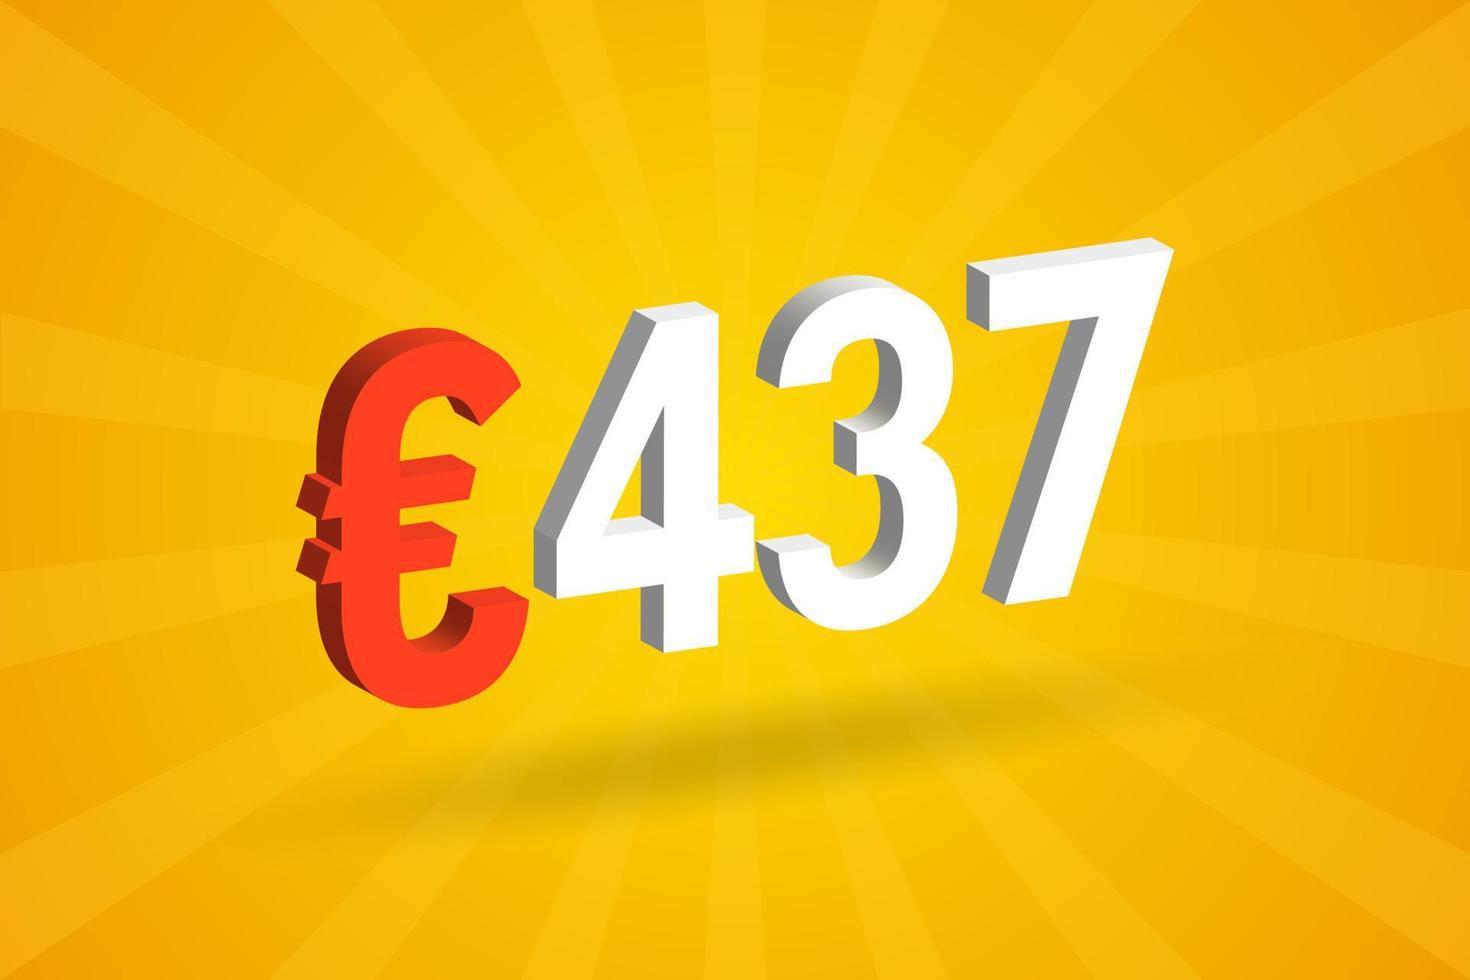 Símbolo de texto de vetor 3d de moeda de 437 euros. vetor de estoque de dinheiro da união europeia 3d 437 euros